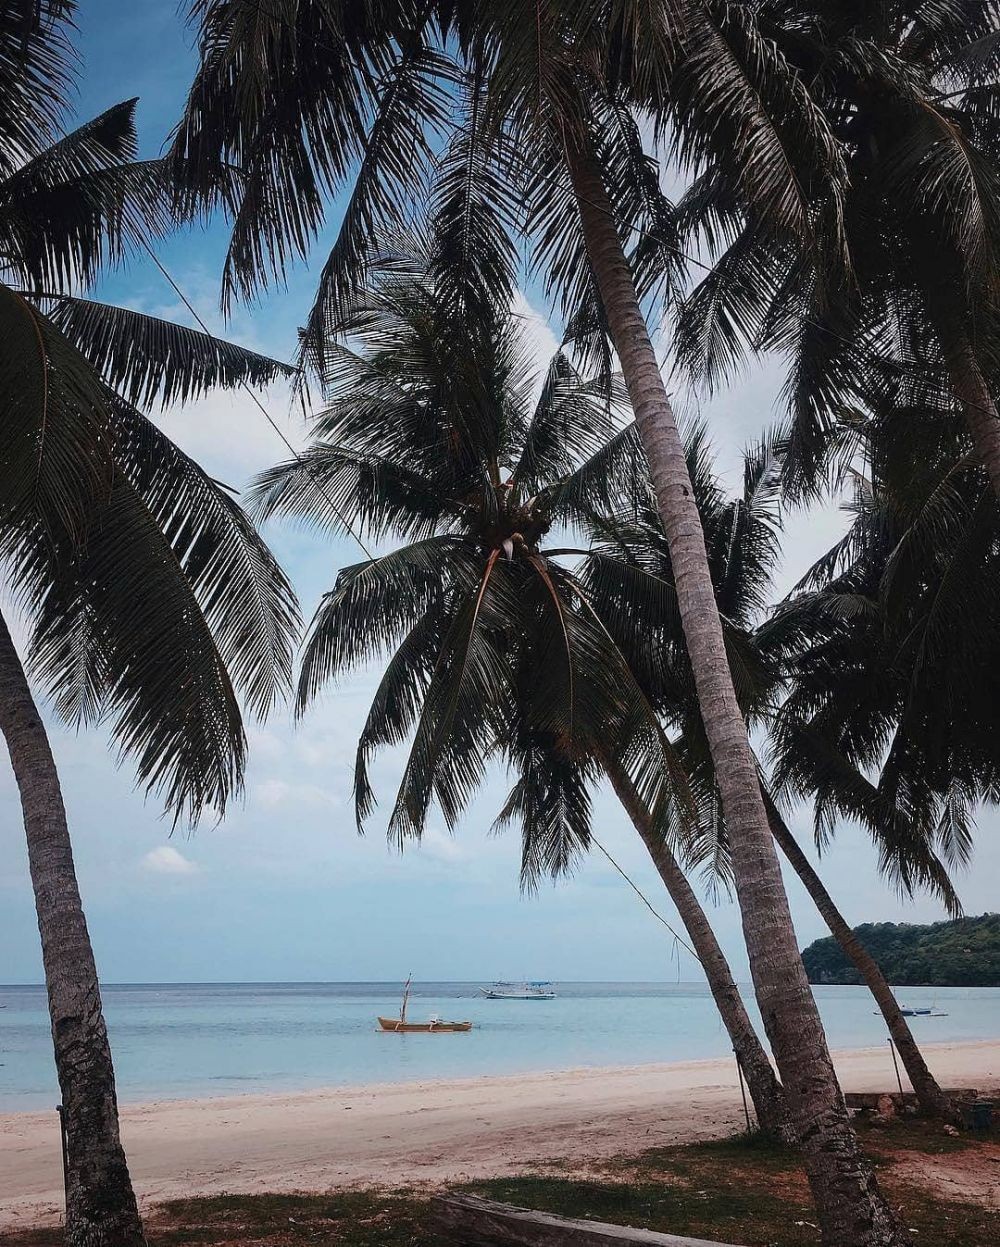 Pantai Samboang, Pilihan Pas Destinasi Wisata Laut di Sulawesi Selatan